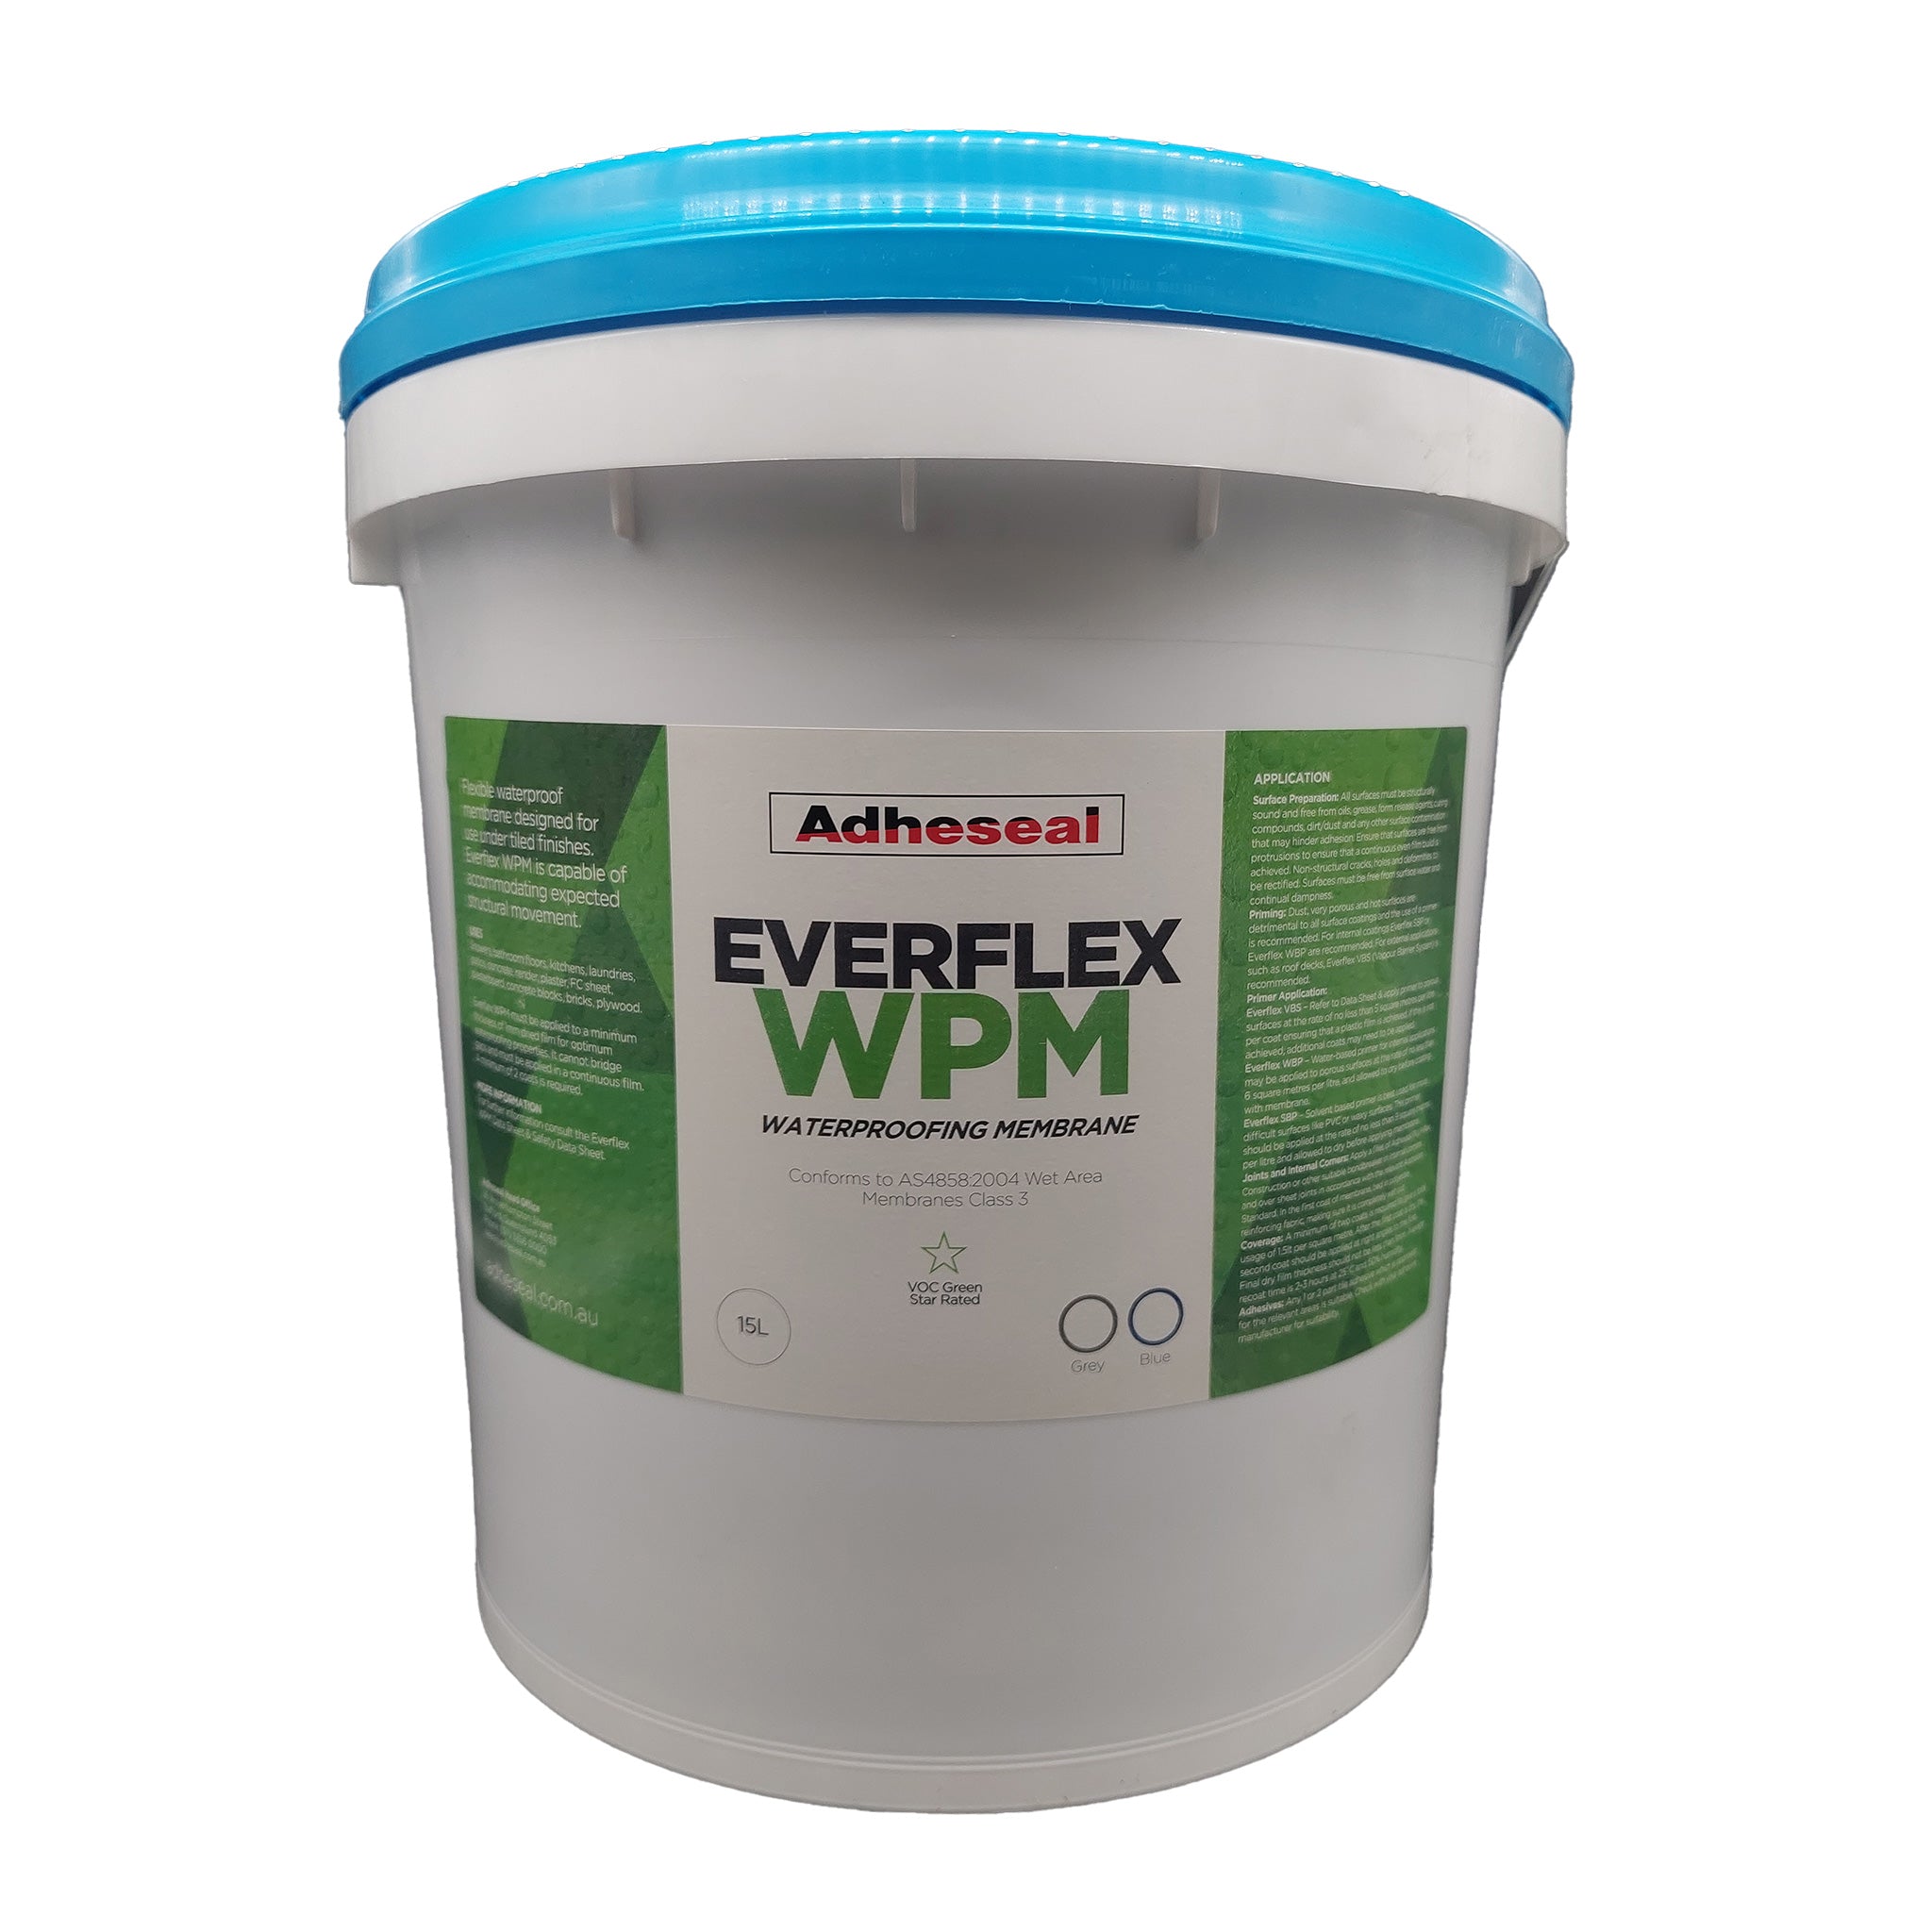 Everflex WPM  Under Tile Waterproofing Membrane – Adheseal